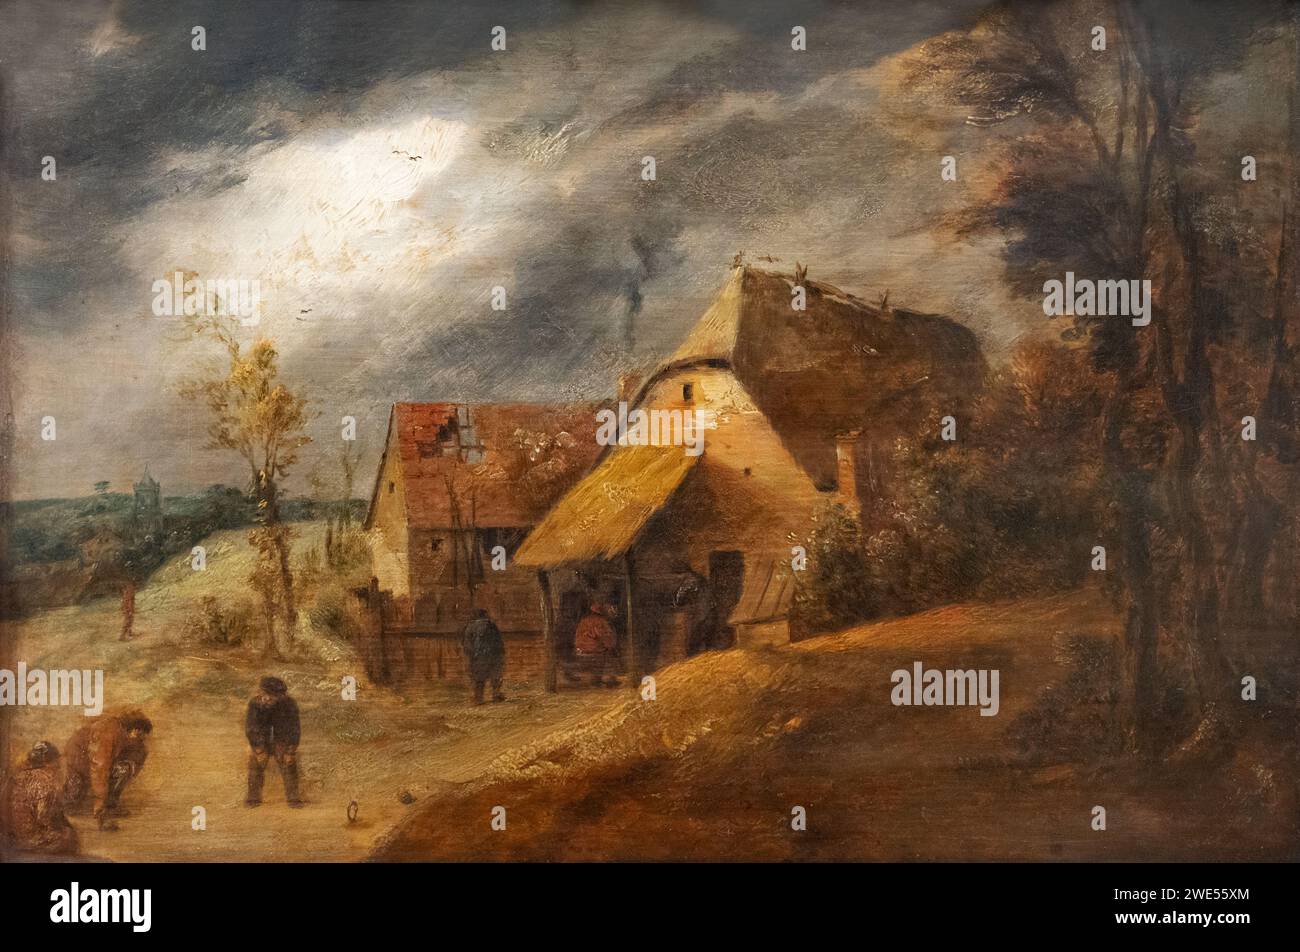 Adriaen Brouwer Gemälde; 'Landschaft mit Bowlern'; um 1632-8; Öl auf Tafel; flämischer Maler aus dem 17. Jahrhundert Stockfoto